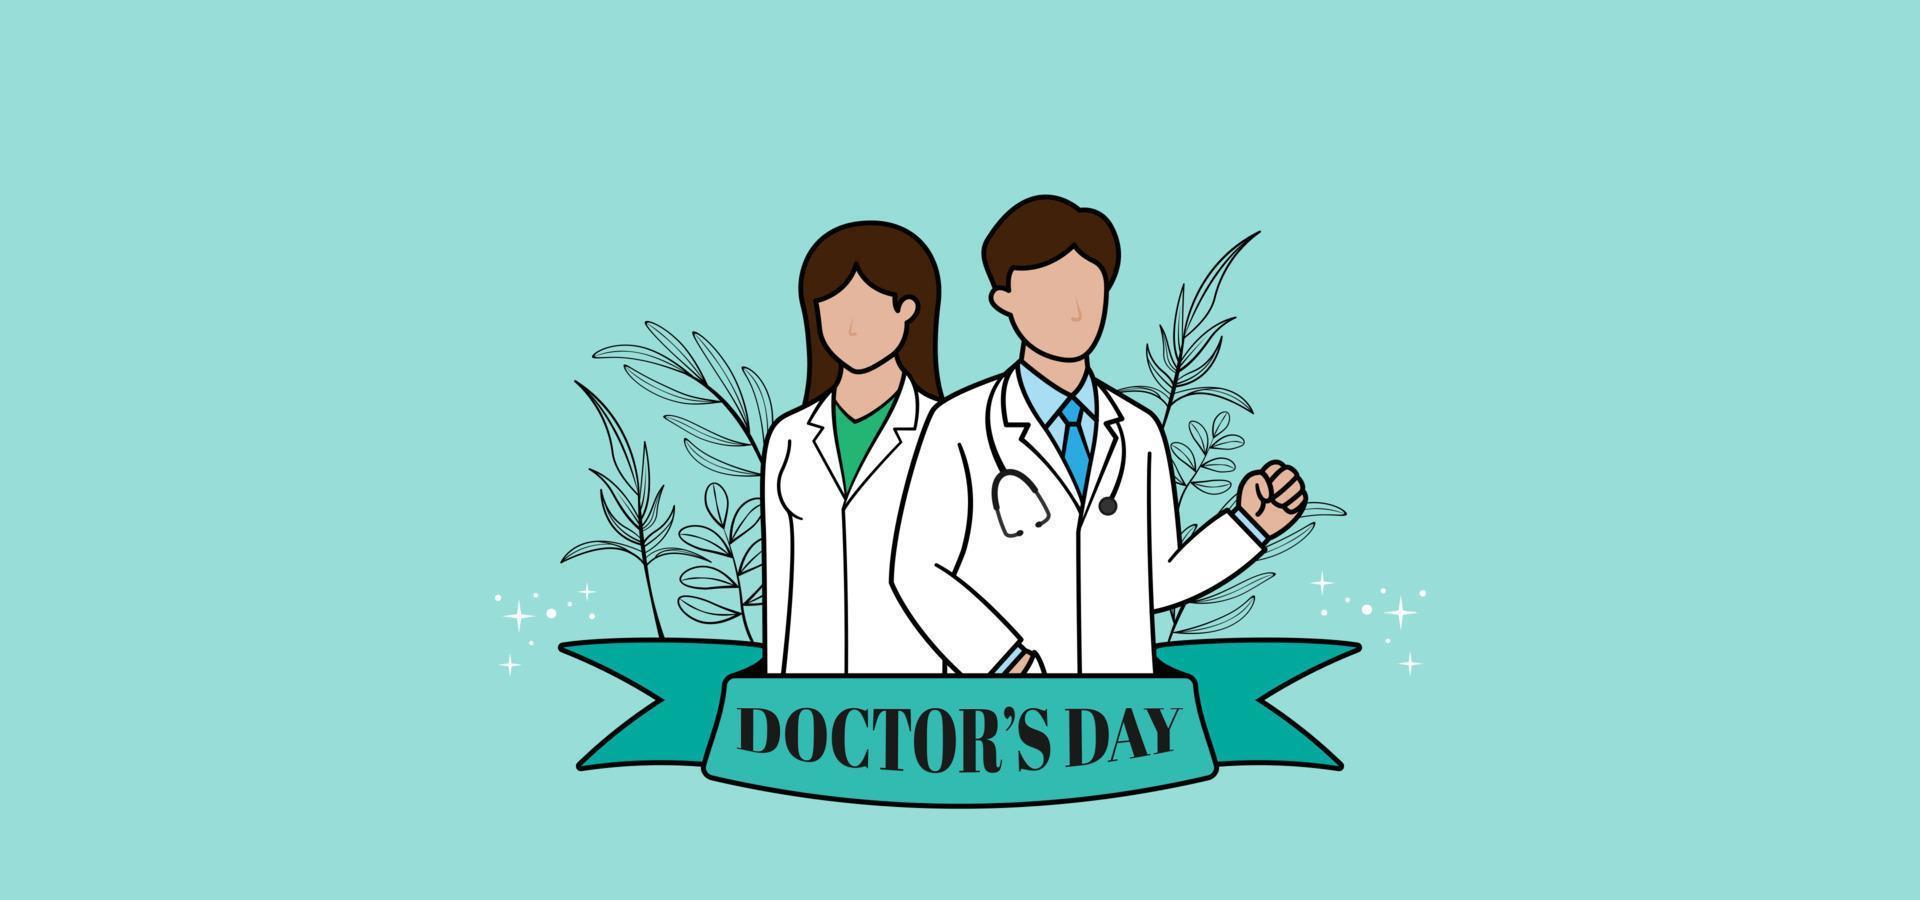 fondo feliz del día del médico. dos pares de médicos, hombres y mujeres con adornos de cinta y líneas de arte de hojas sobre fondo azul claro vector